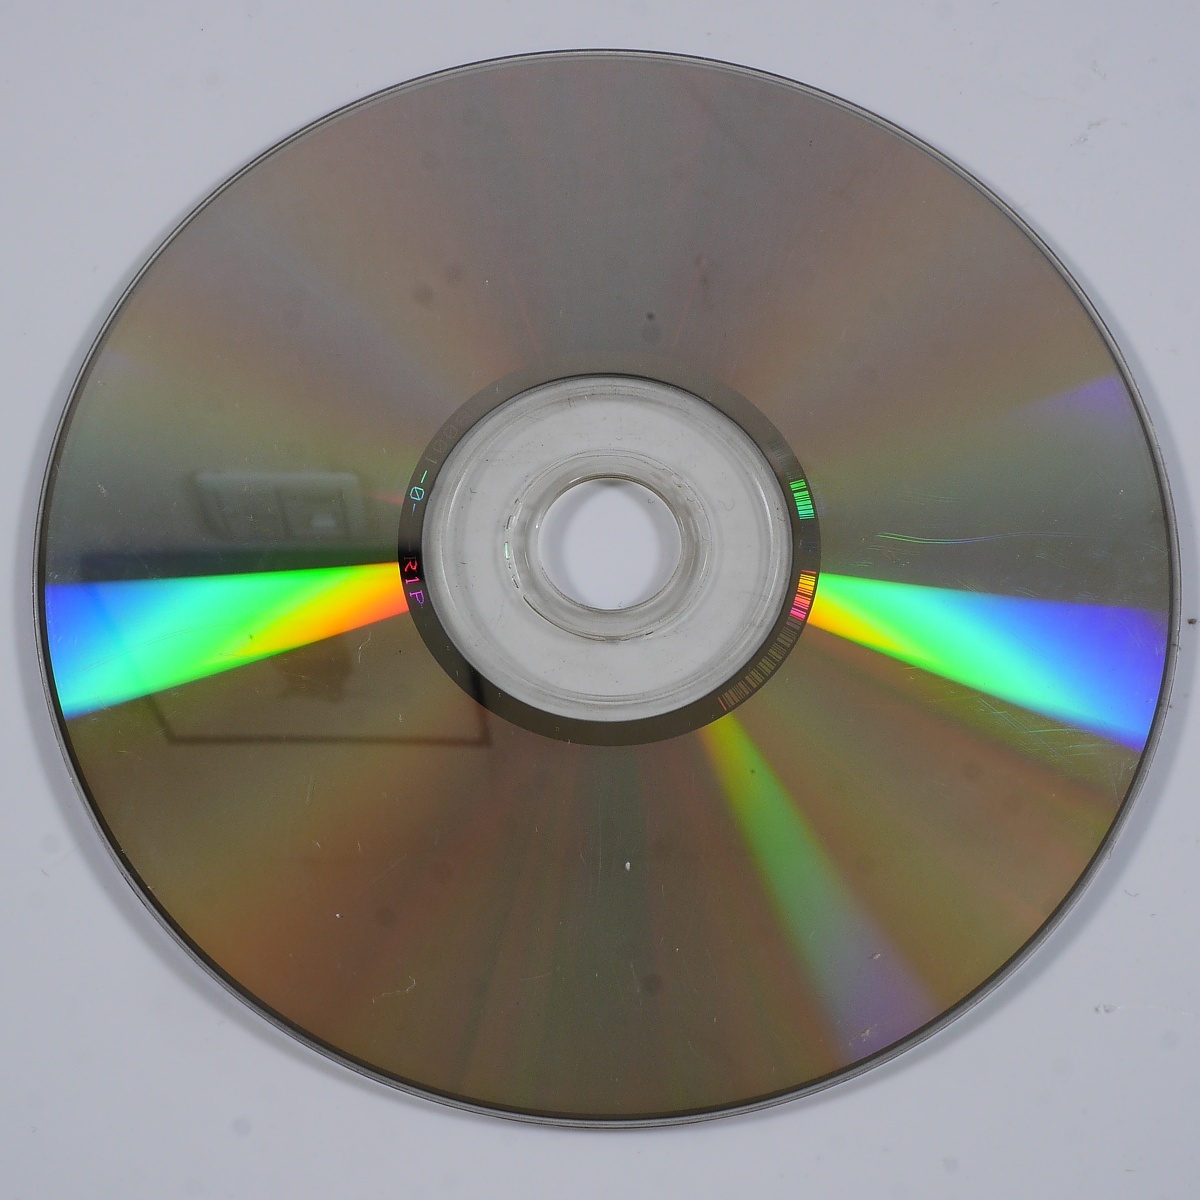 NICHIBUTSU high rate DVD mah-jong VOL.1 disk only 1 sheets set 